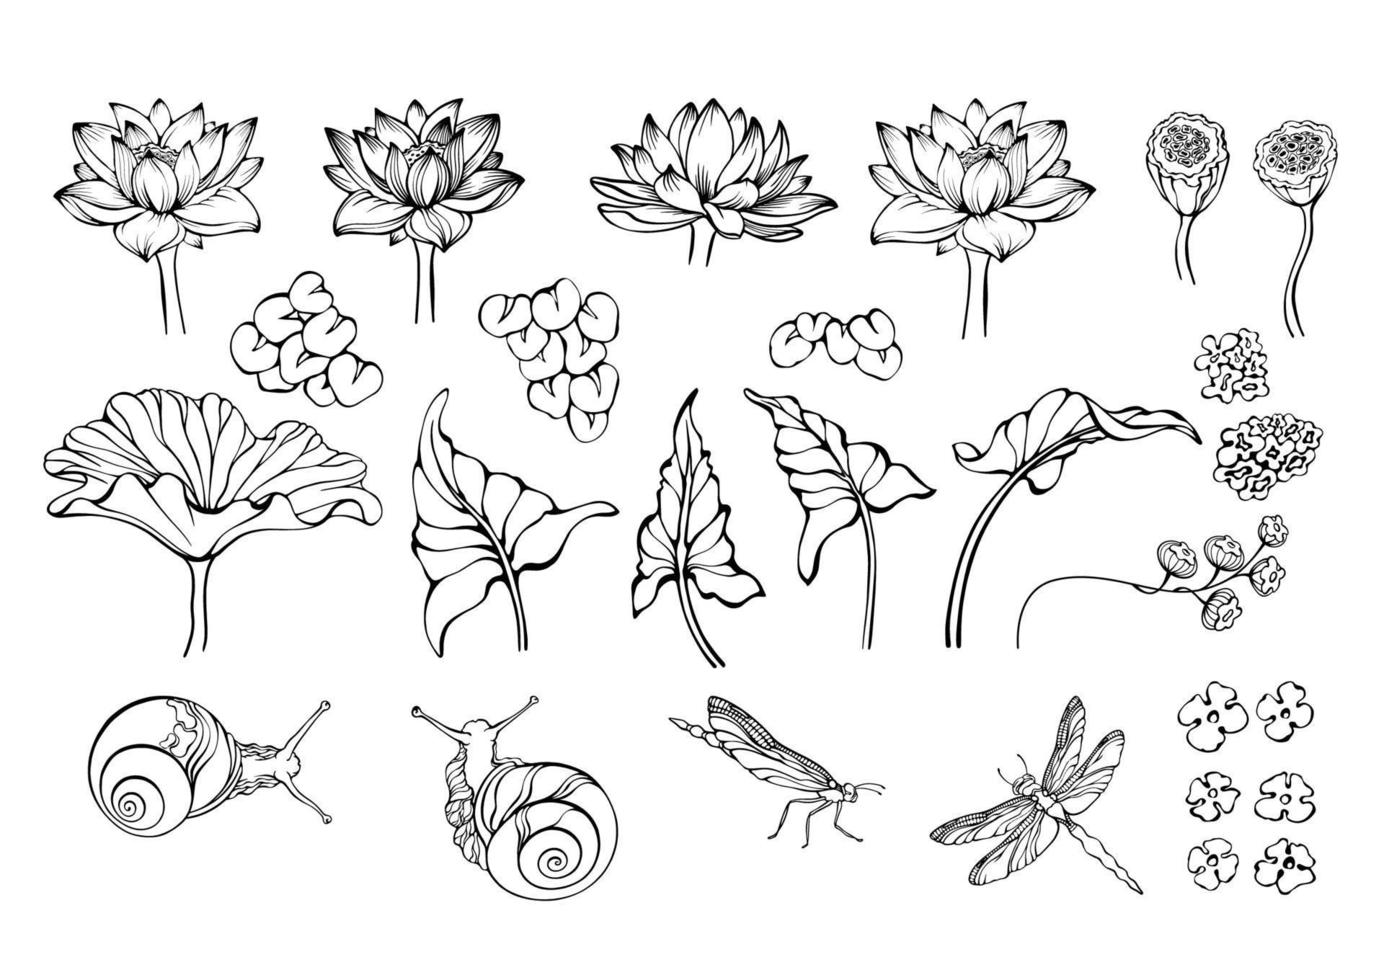 loto, caracol, libélula, y conjunto de lago plantas. vector ilustraciones.